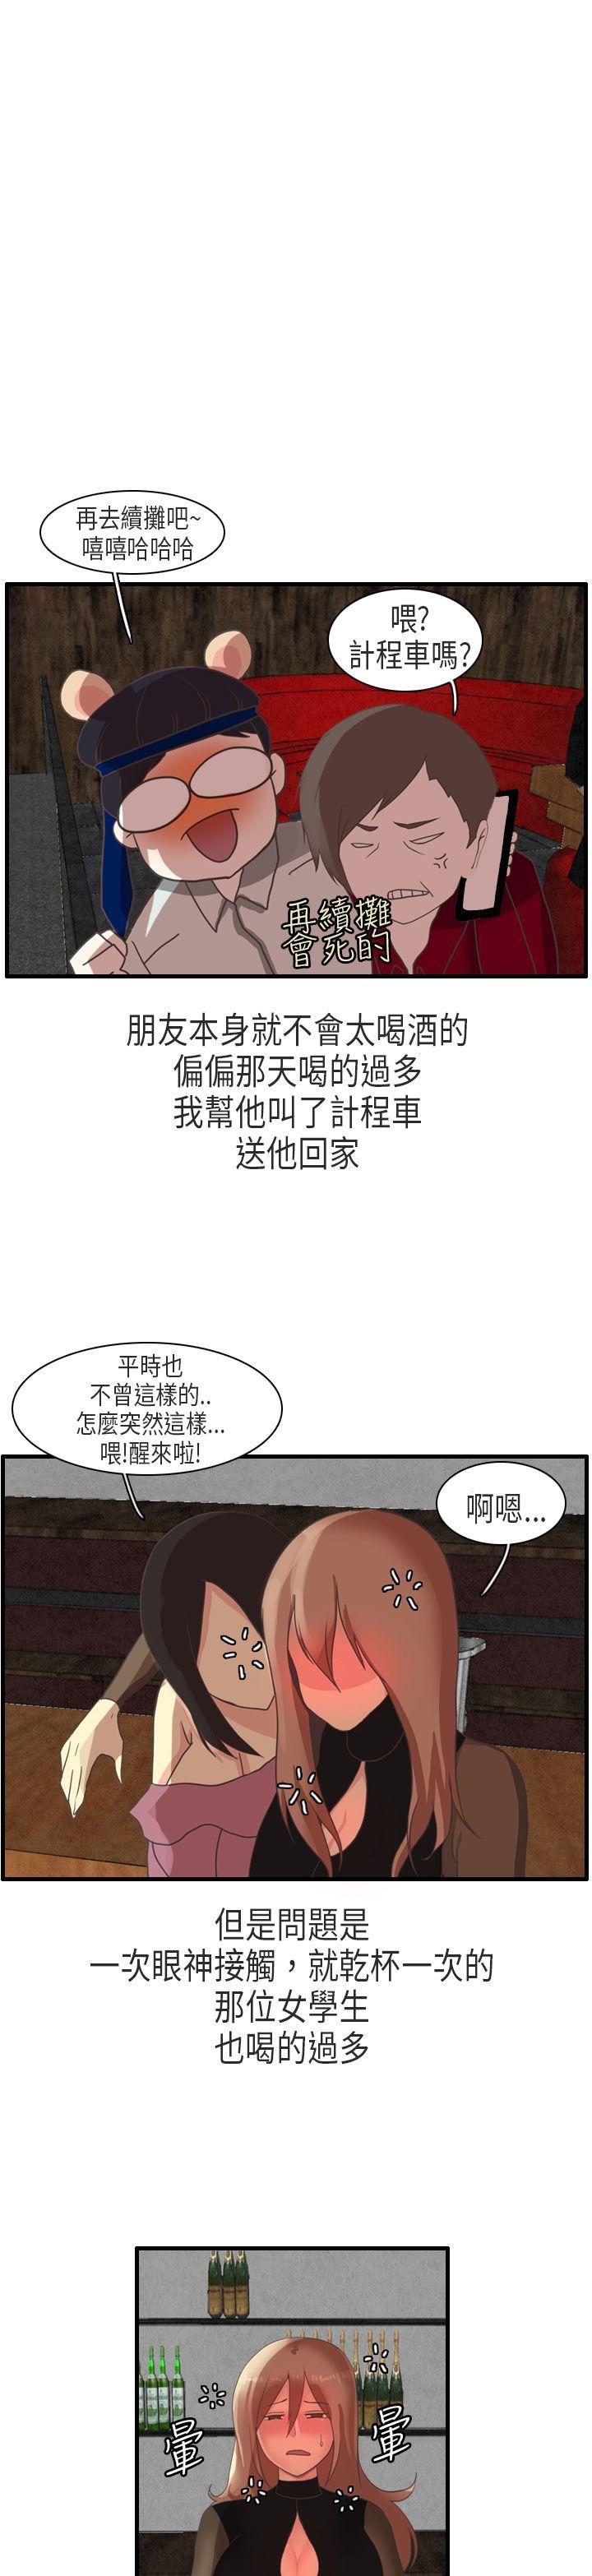 韩国污漫画 秘密Story第二季 教师和留级生(下) 9